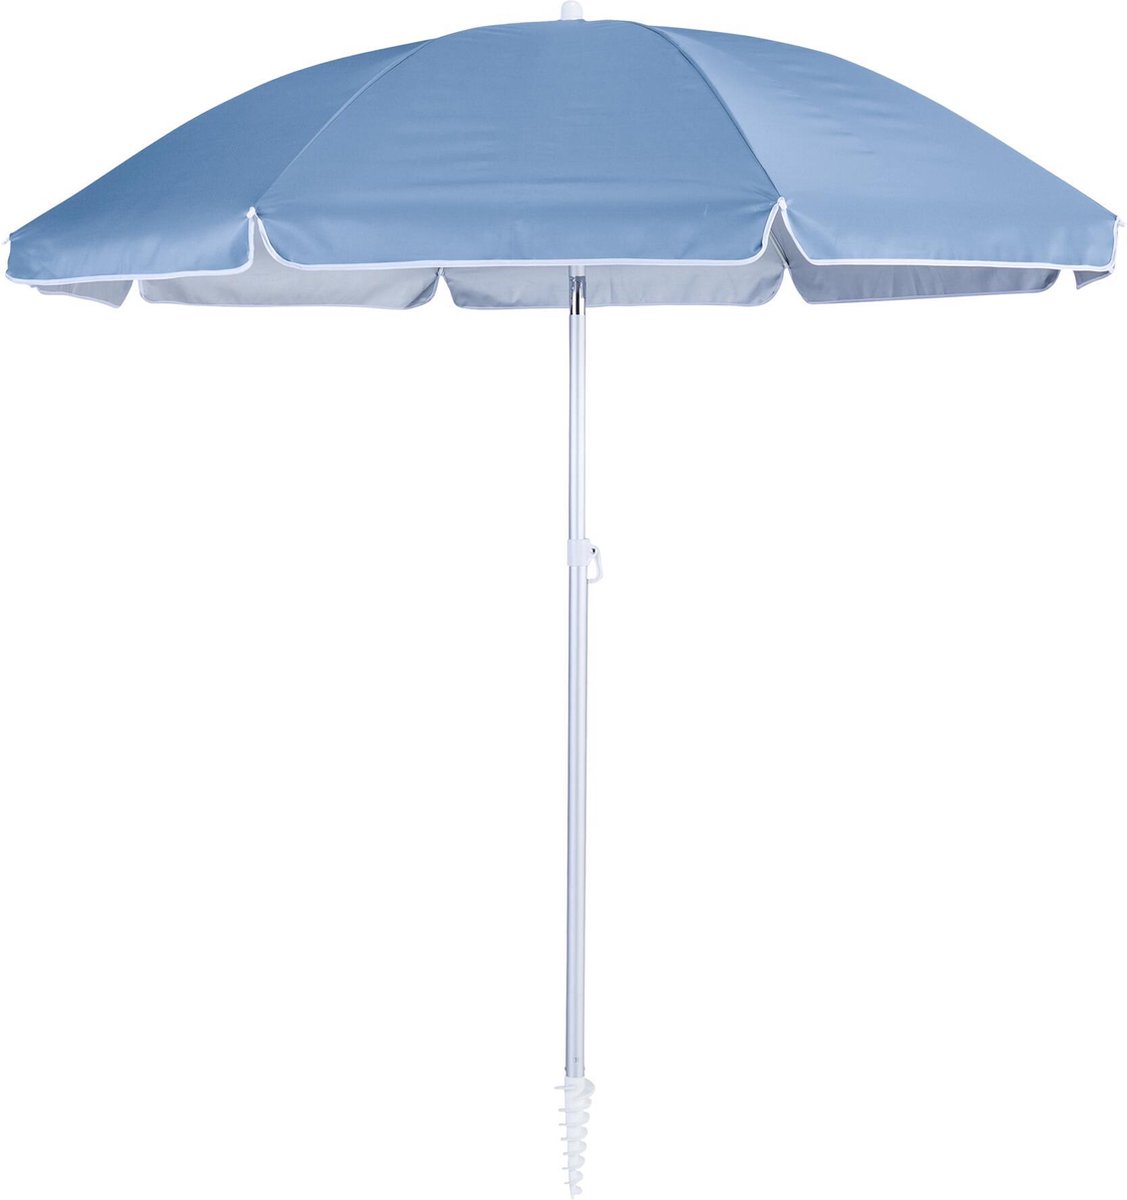 NATERIAAL - Parasol VALI - Ronde parasol - ø 200 cm - 3.14 m² - 95% UV-bescherming - Kantelbaar - Met transporttas - Aluminium - Polyester - Blauw